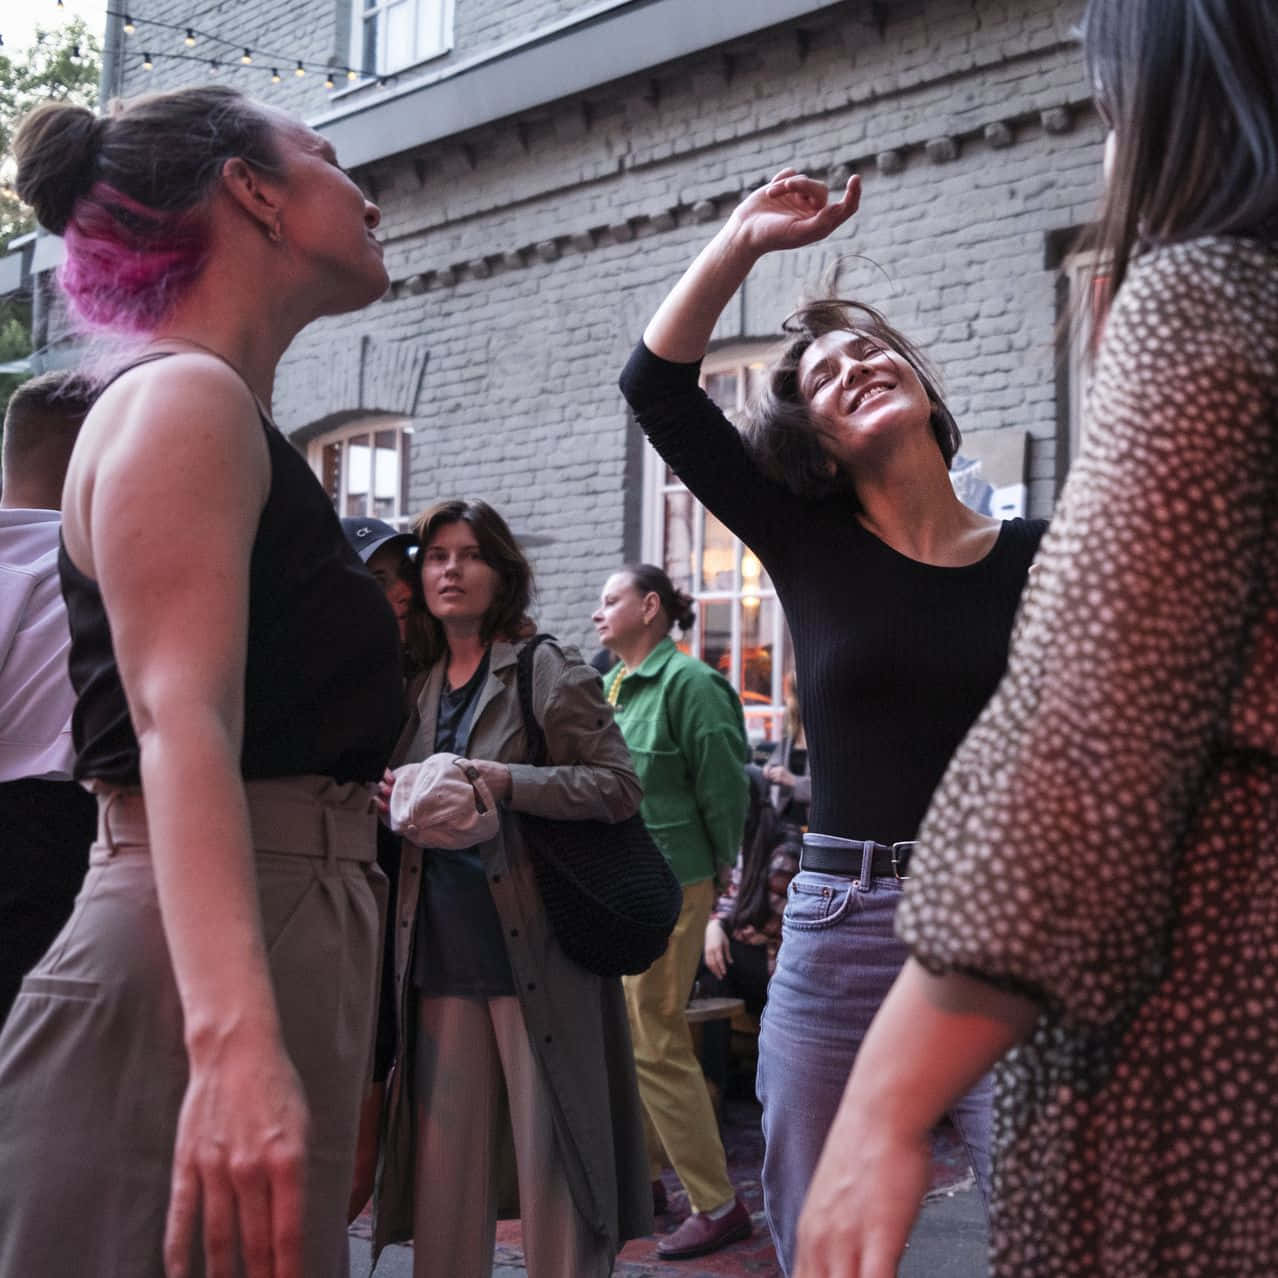 Umgrupo De Mulheres Está Dançando Em Uma Rua.